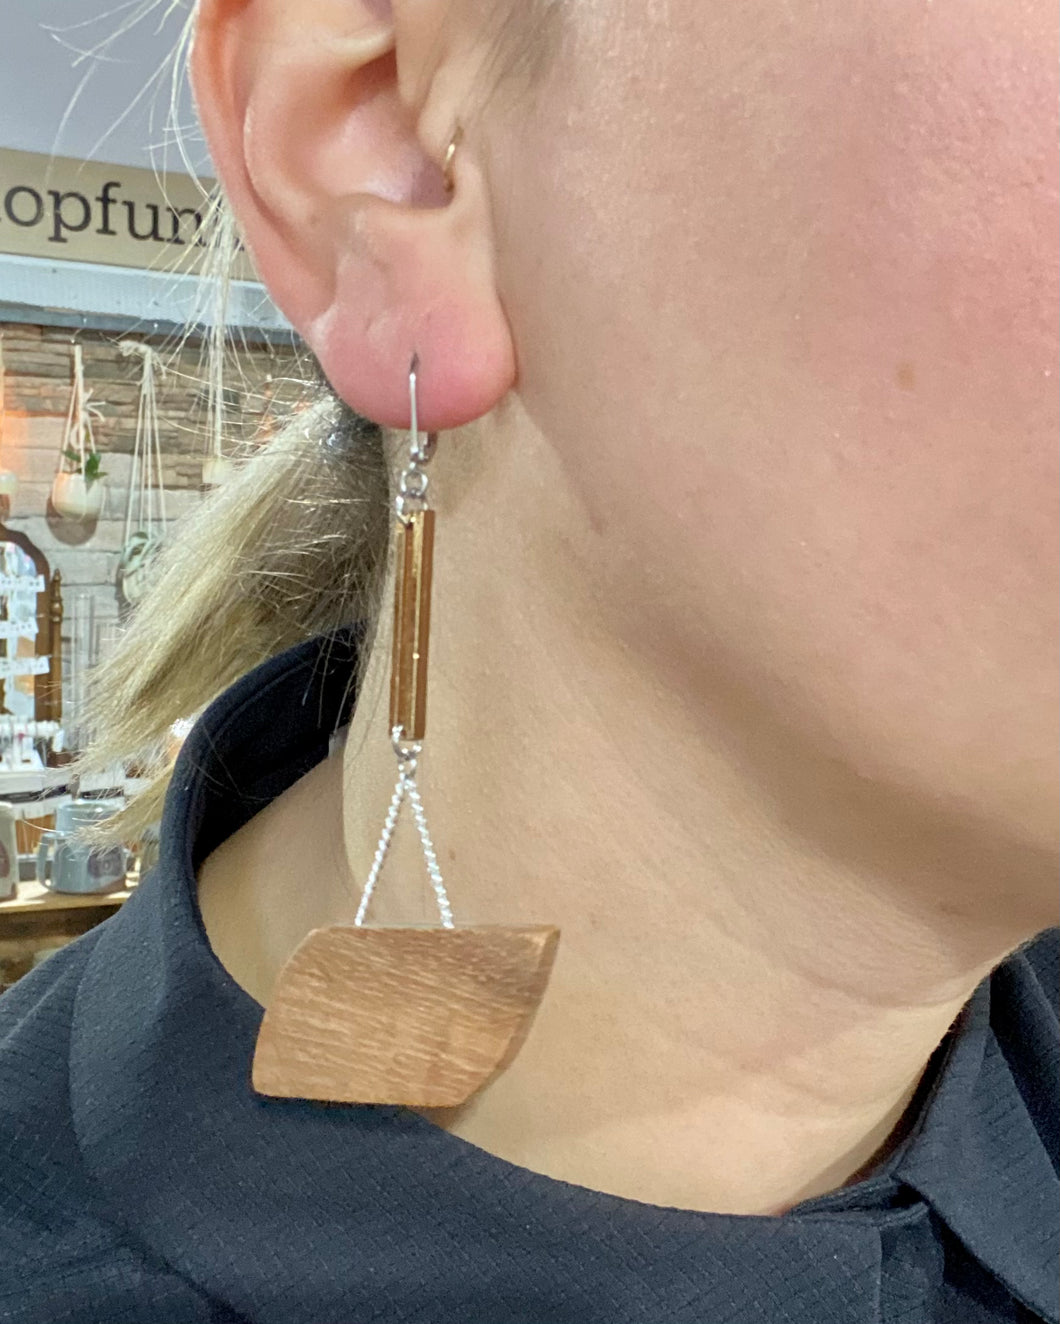 Serena earrings